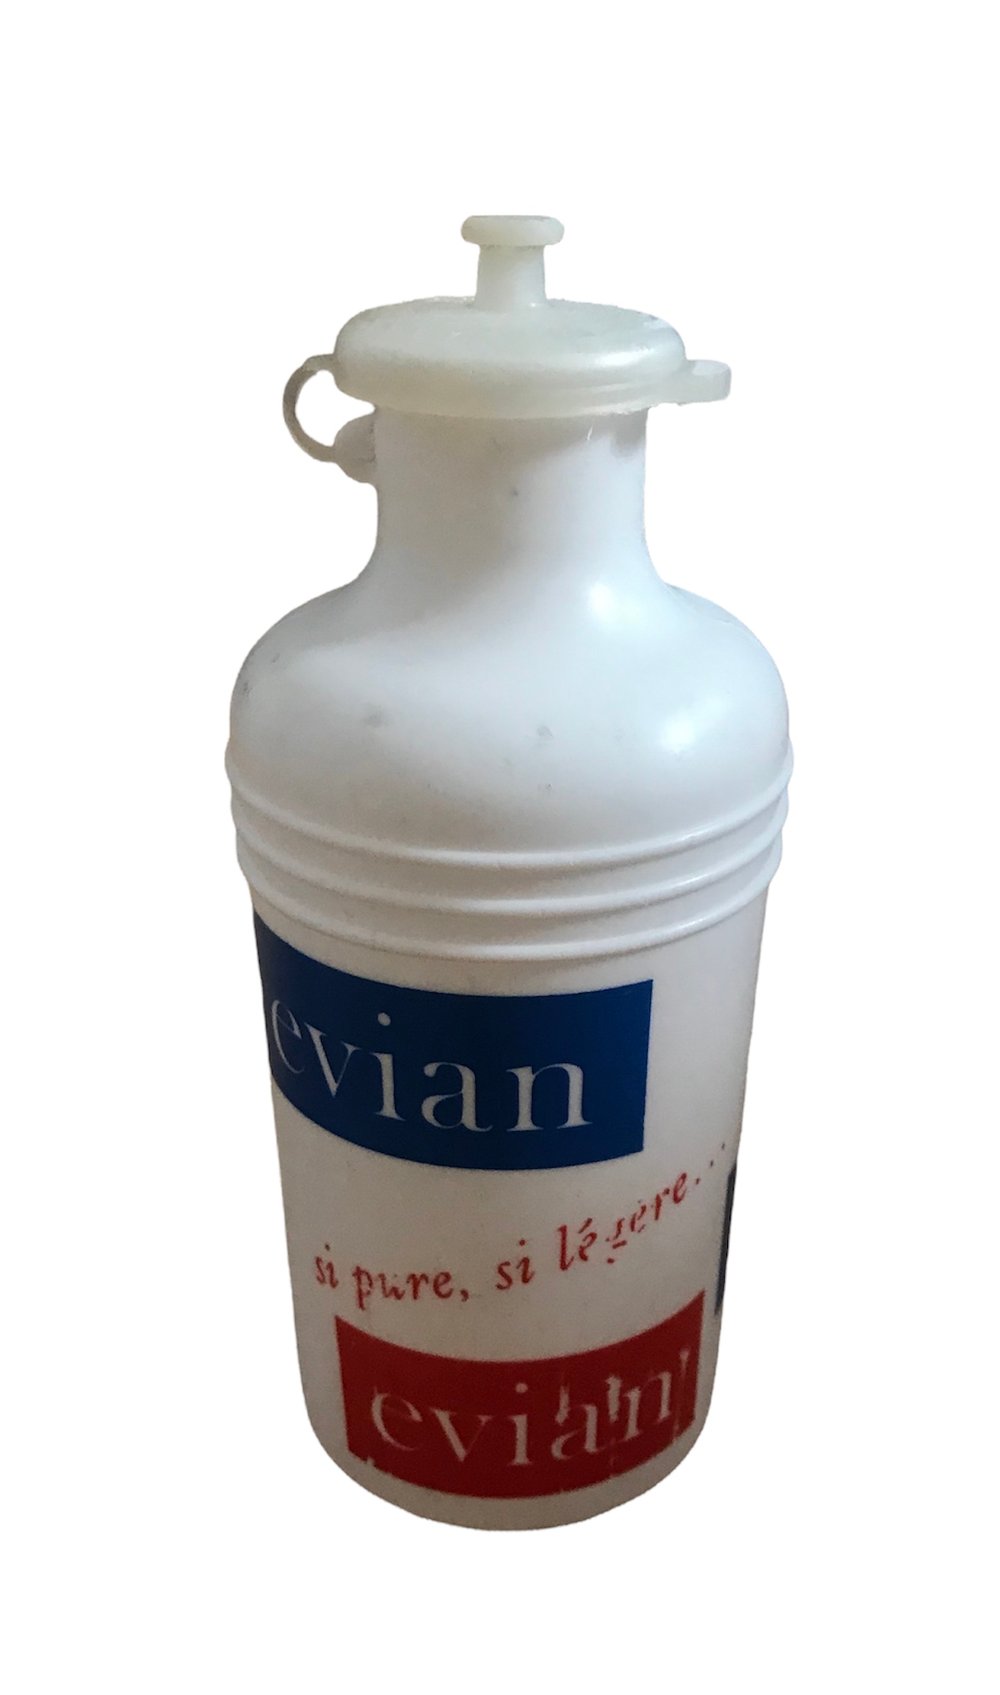 1967 - Tour de France / Evian water bottle / White nipple